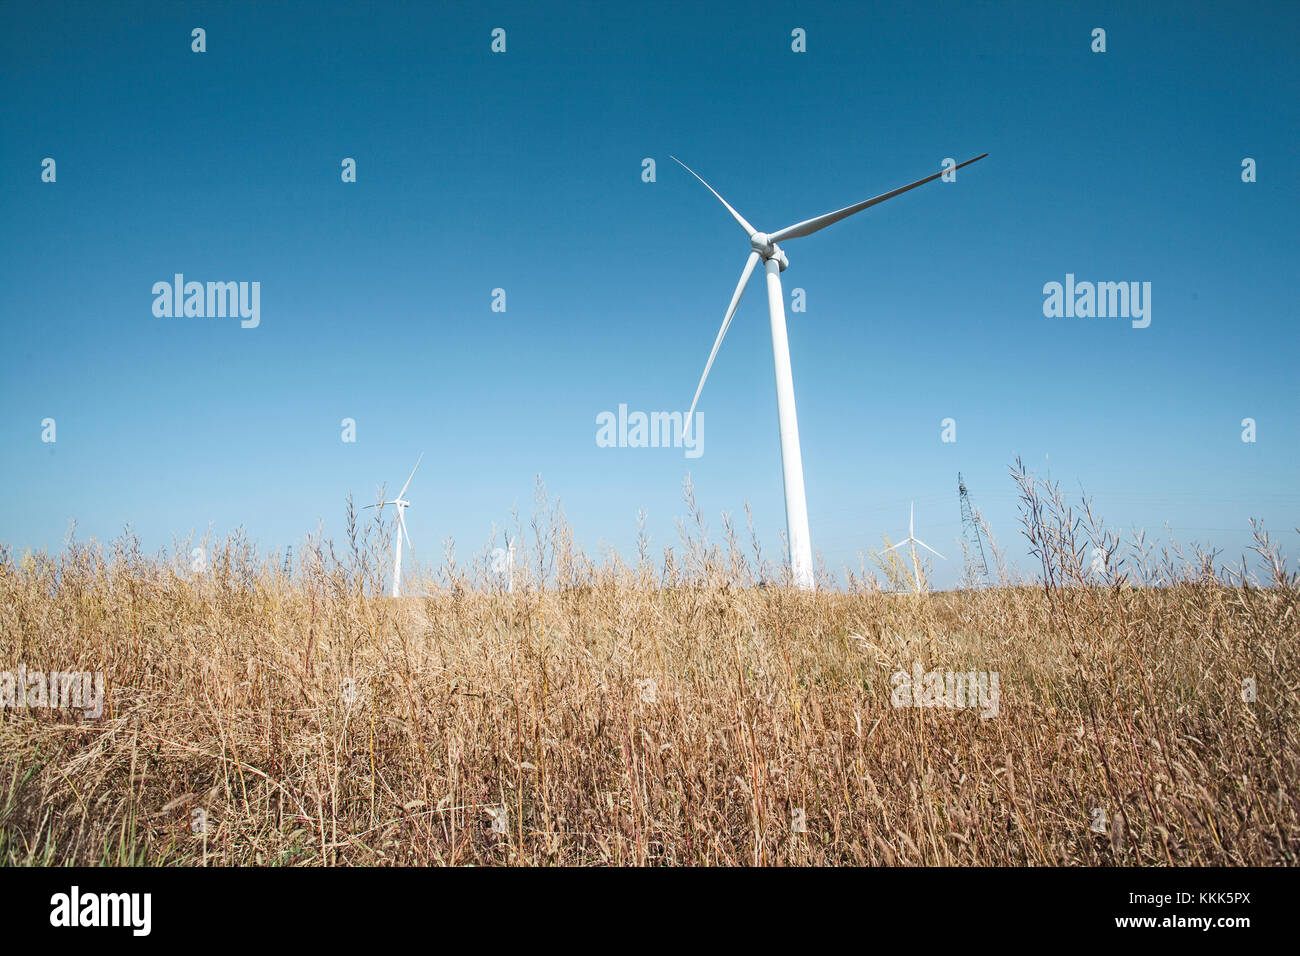 Les moulins à vent en Mongolie Intérieure, province, China Banque D'Images